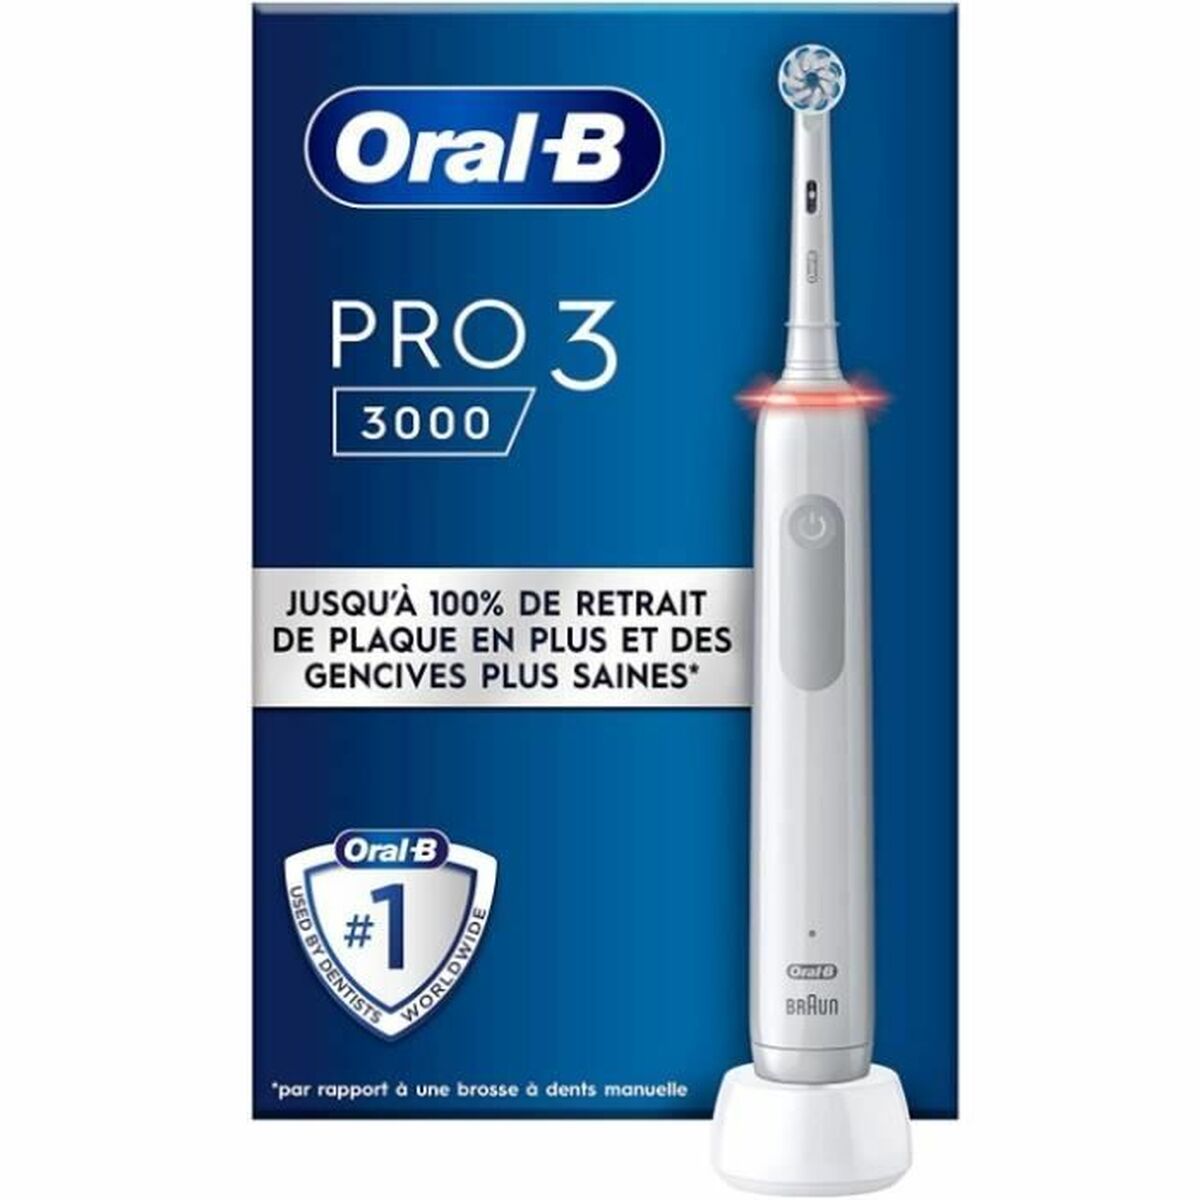 Periuța de dinți electrică Oral-B Pro 3 3000